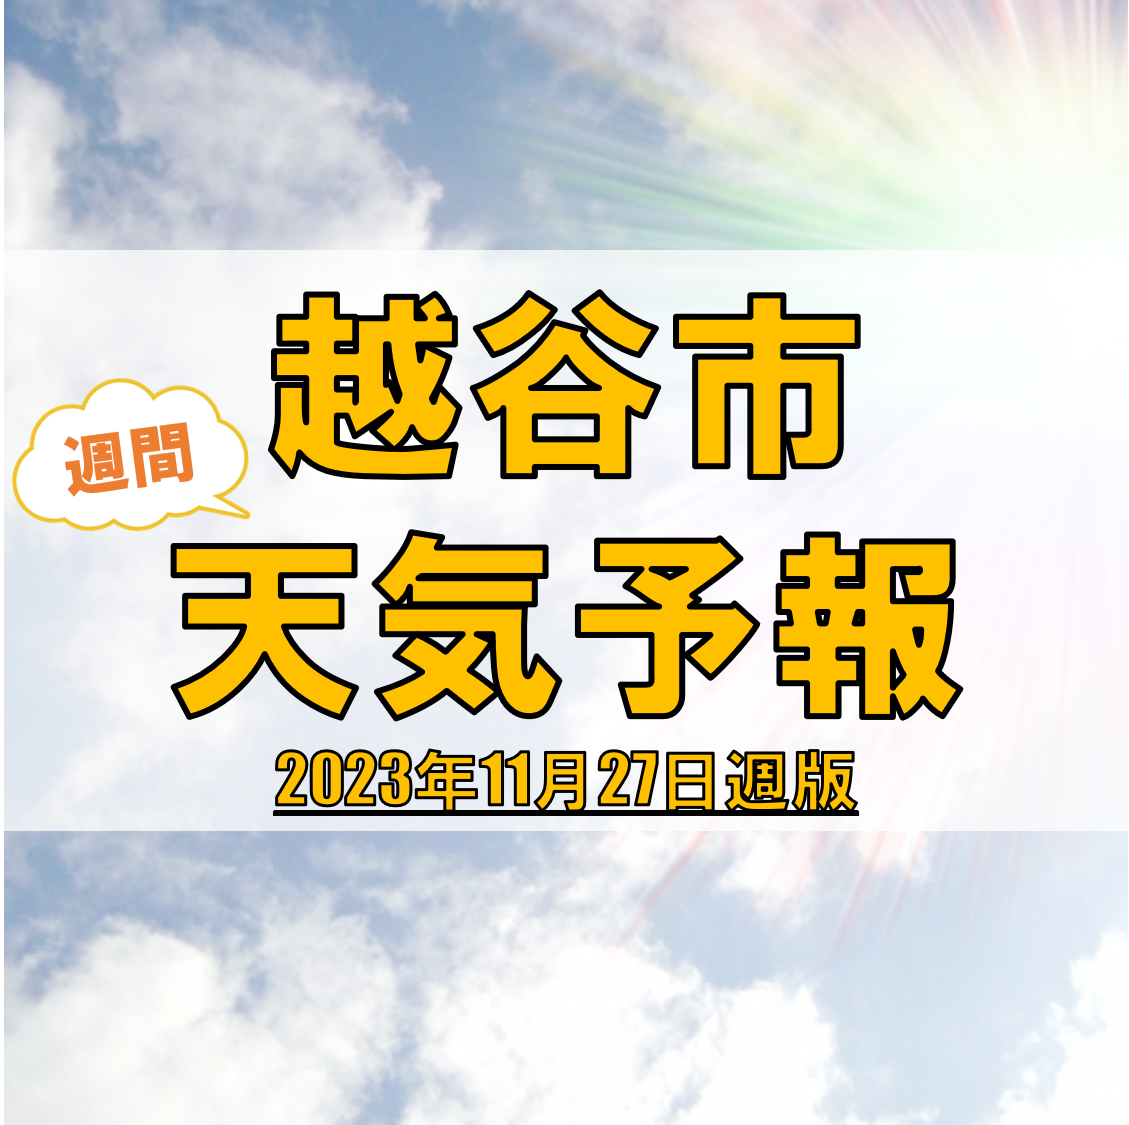 越谷市の天気 週間予報【2023年11月27日週】